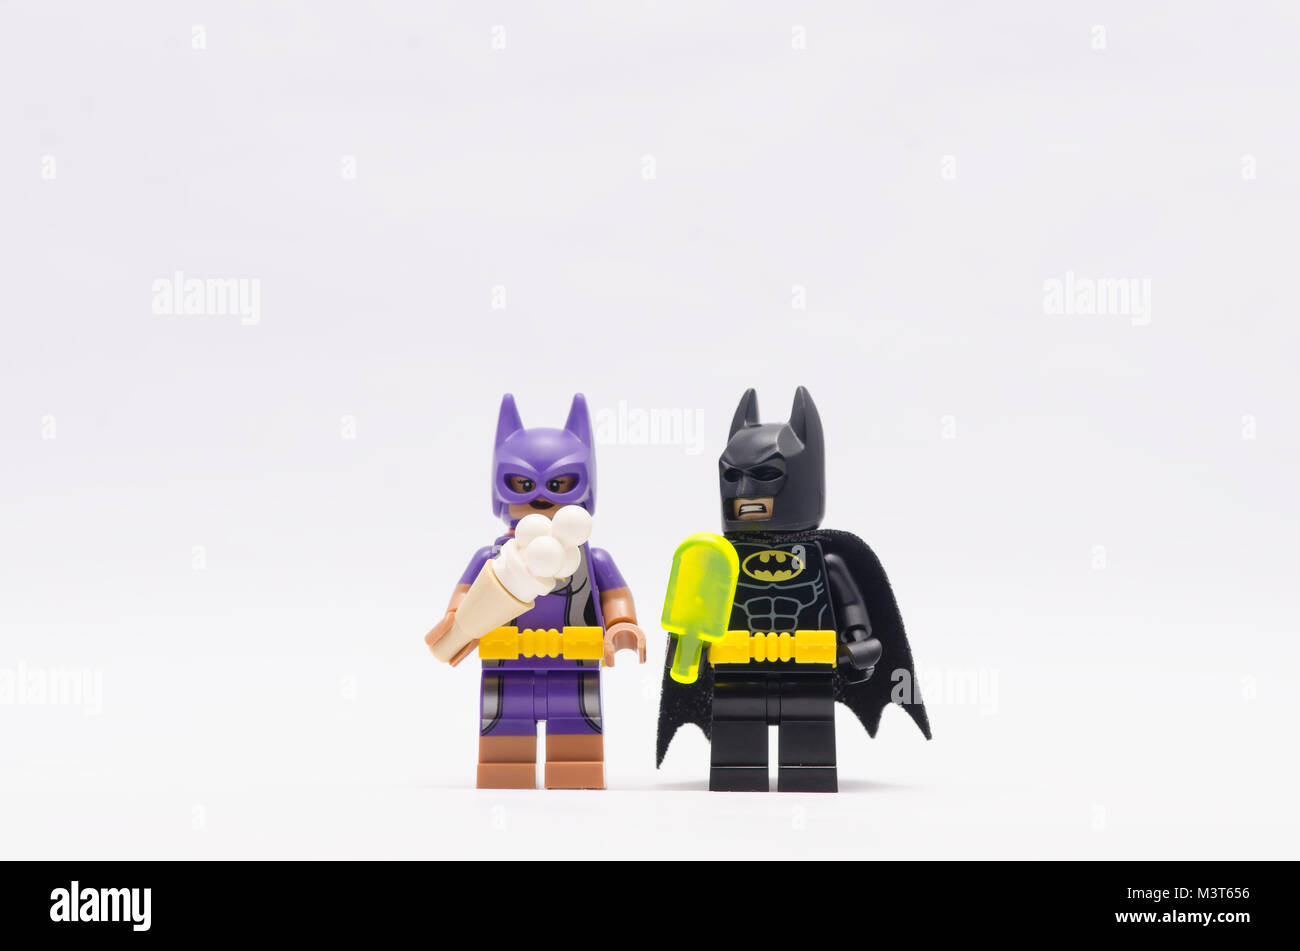 lego batman and batgirl holding ice cream. isolated on white background  Stock Photo - Alamy